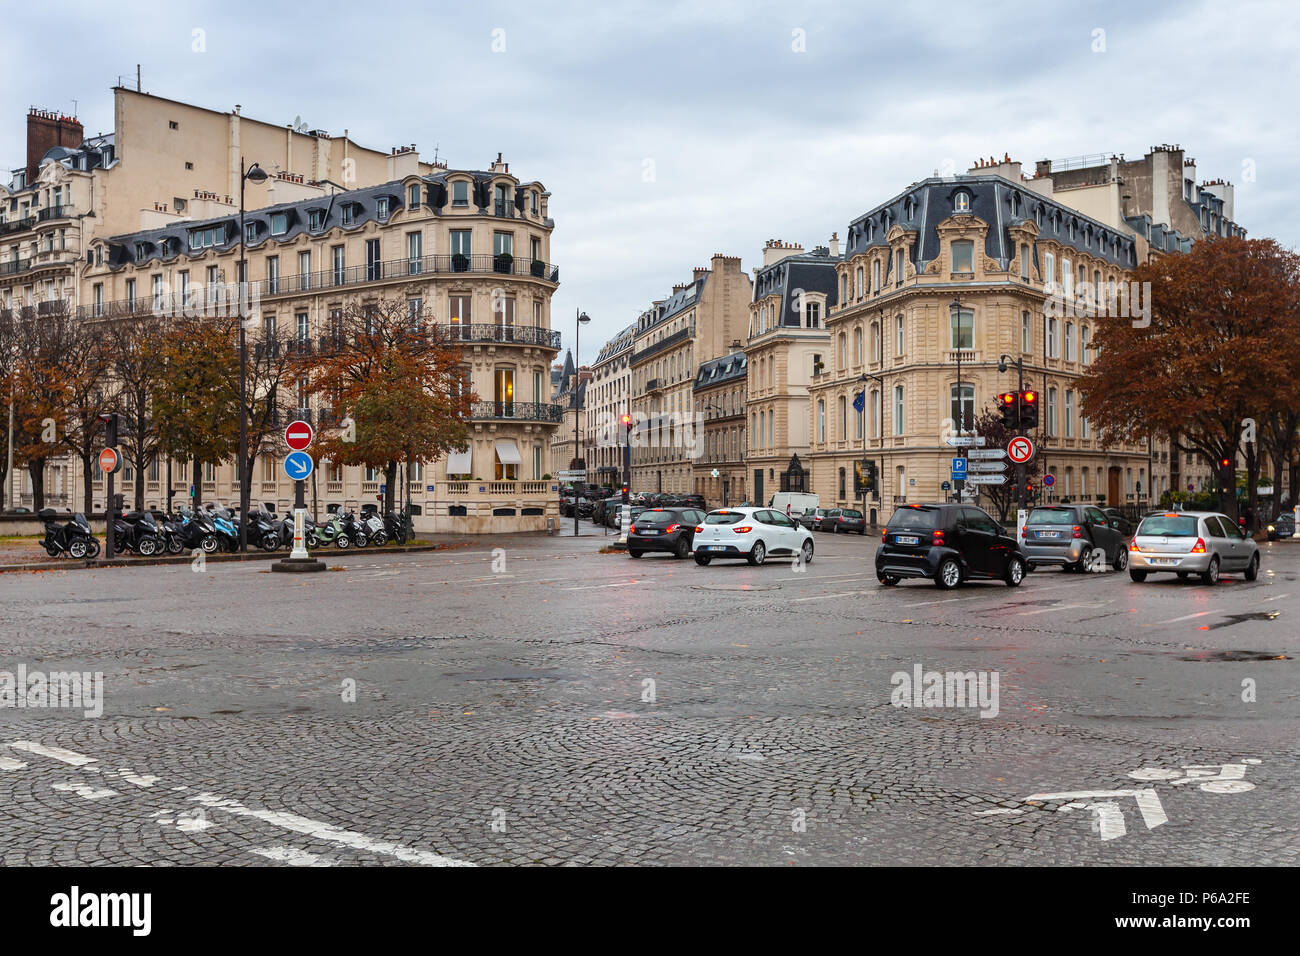 Parigi, Francia - 4 Novembre 2016: Street View di Parigi città con automobili in attesa sul crocevia urbano Foto Stock